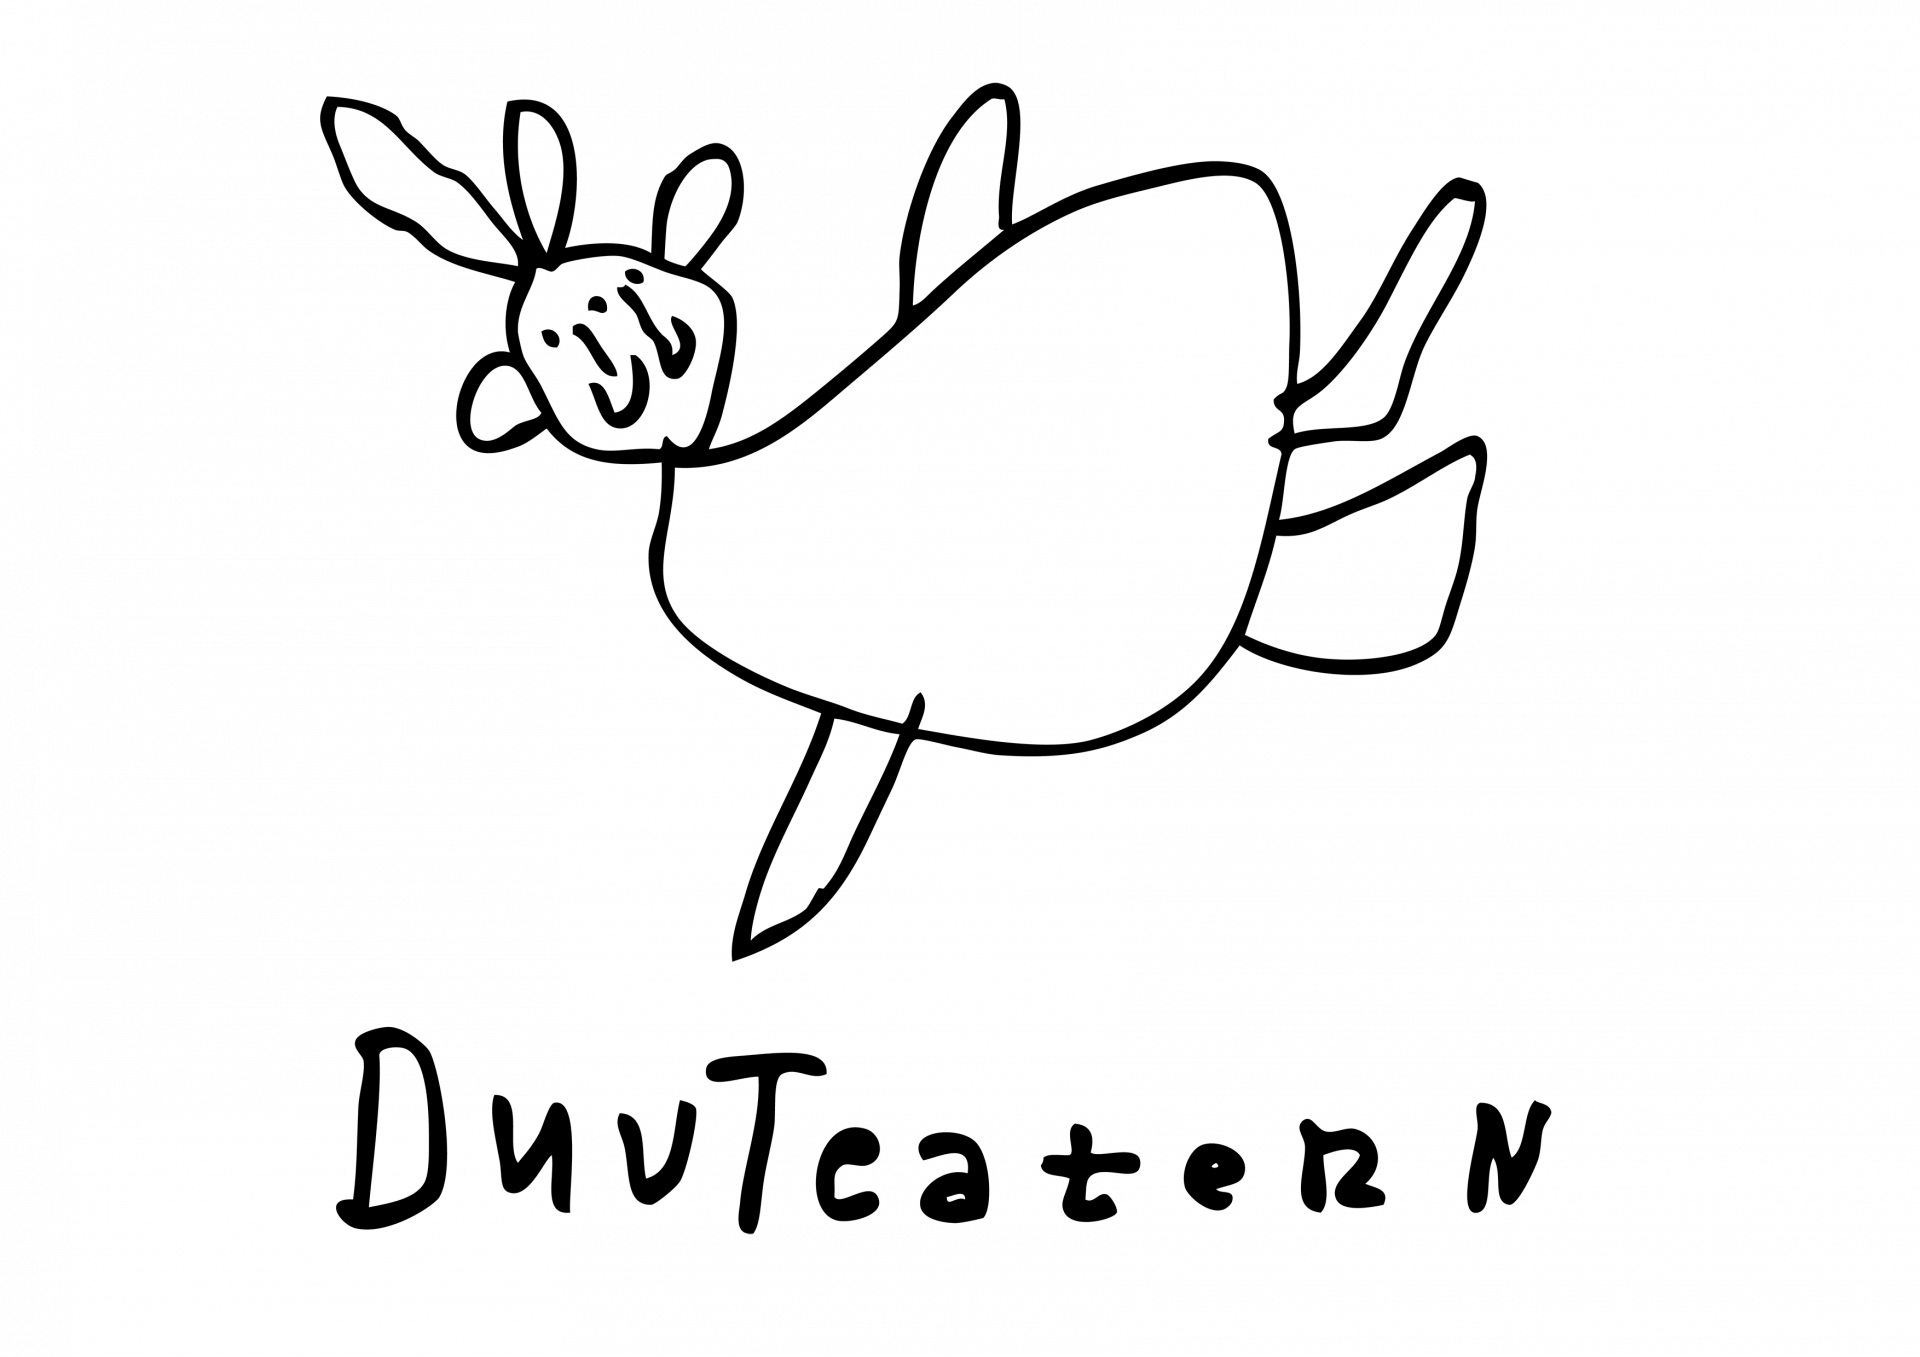 Logotyp för DuvTeatern. En för hand ritad flygande duva och texten 'DuvTeatern' under den.